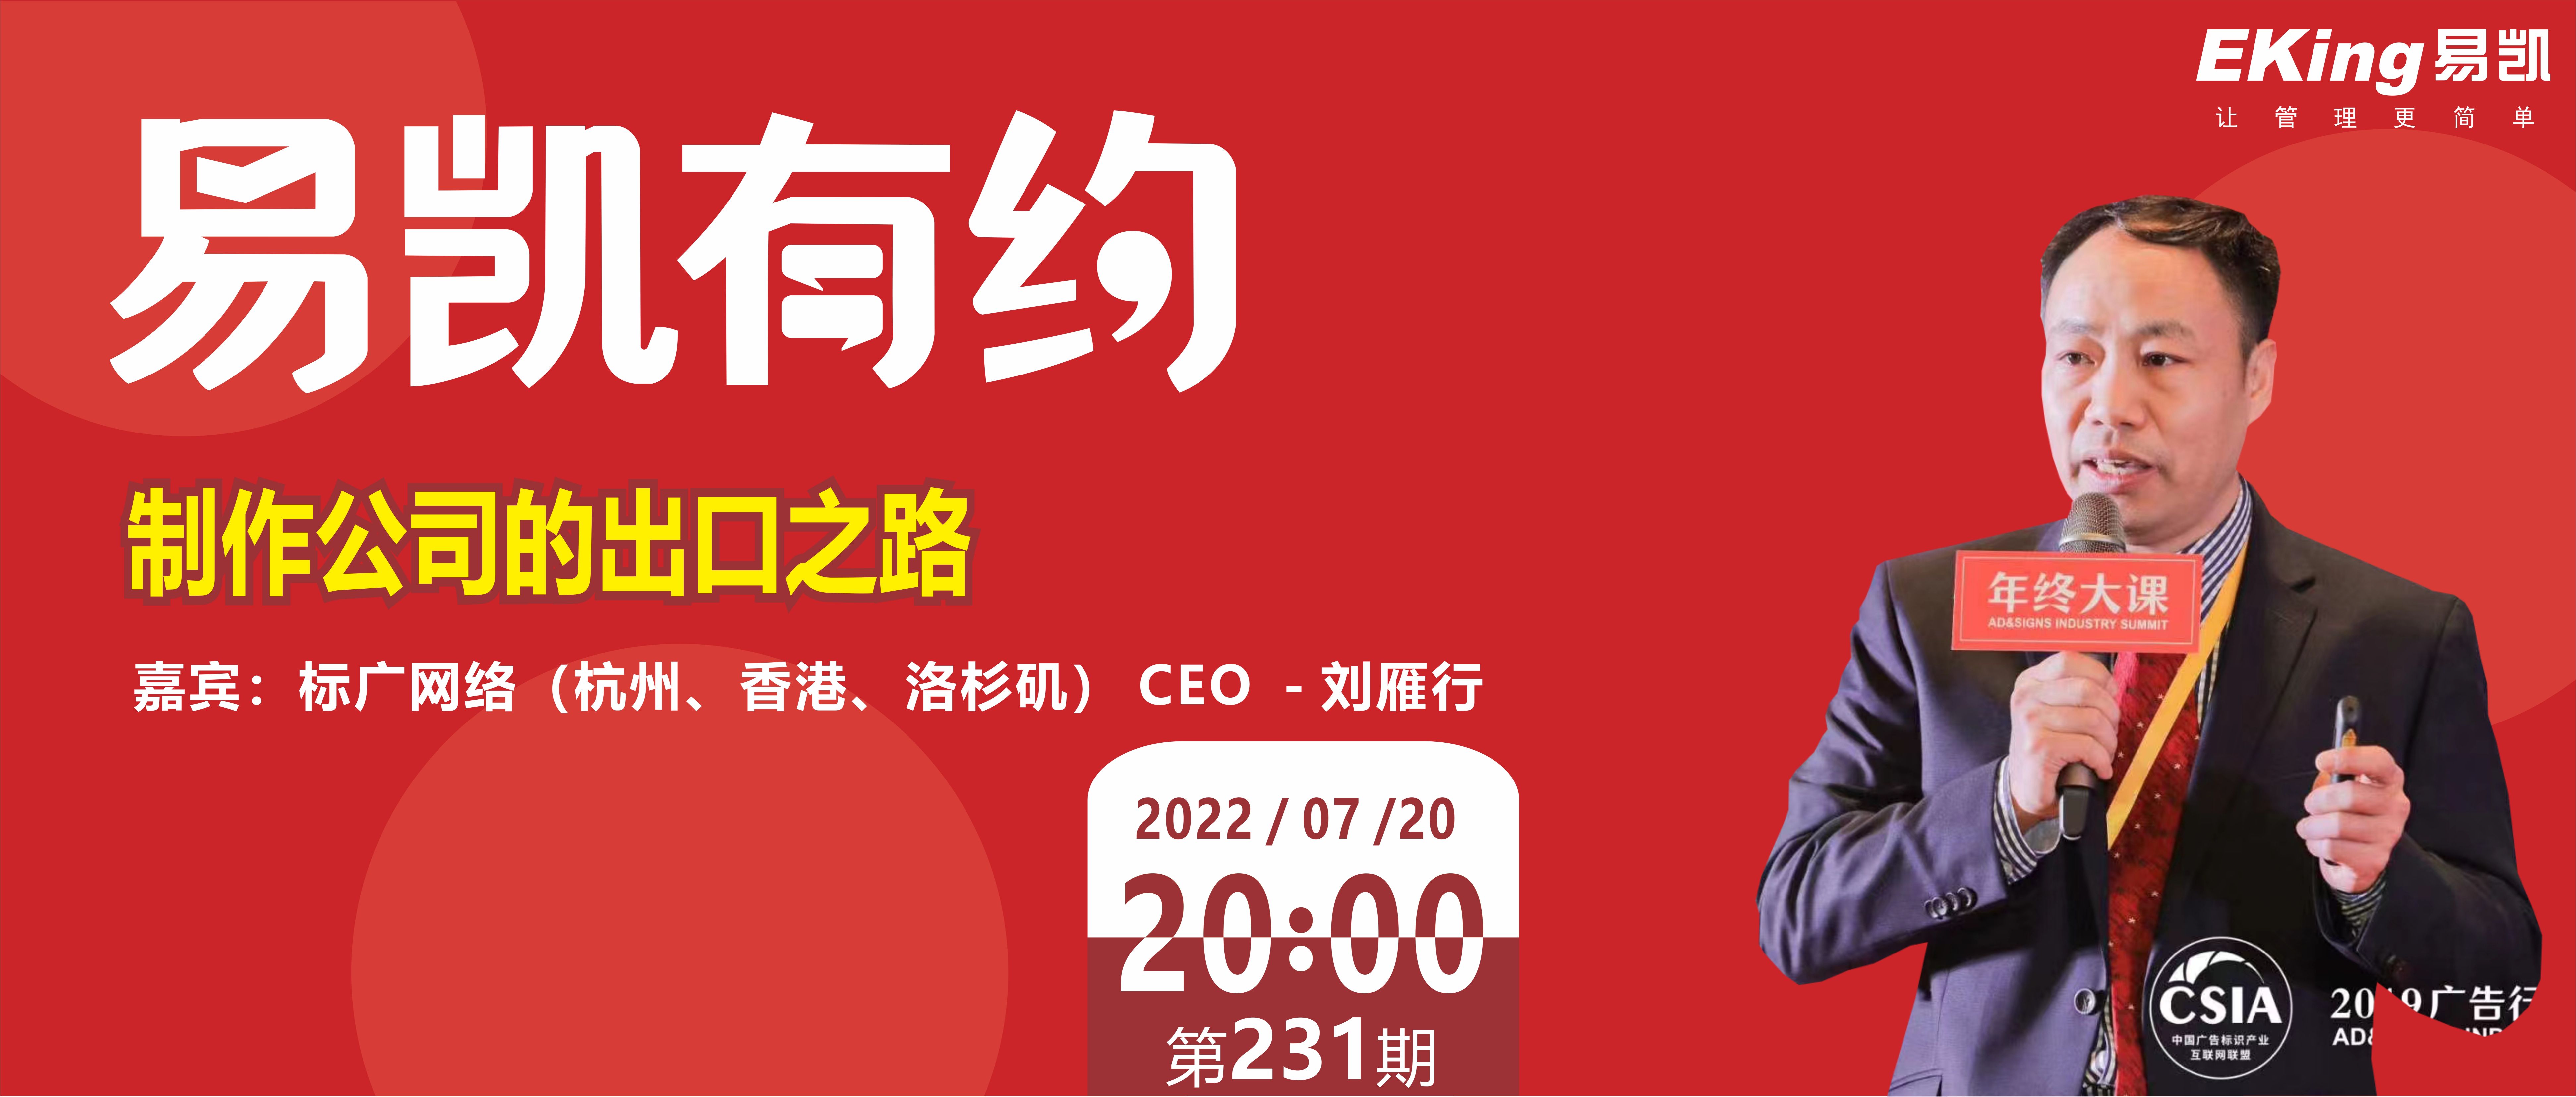 制作公司的出口之路—标广网络（杭州、香港、洛杉矶）CEO - 刘雁行